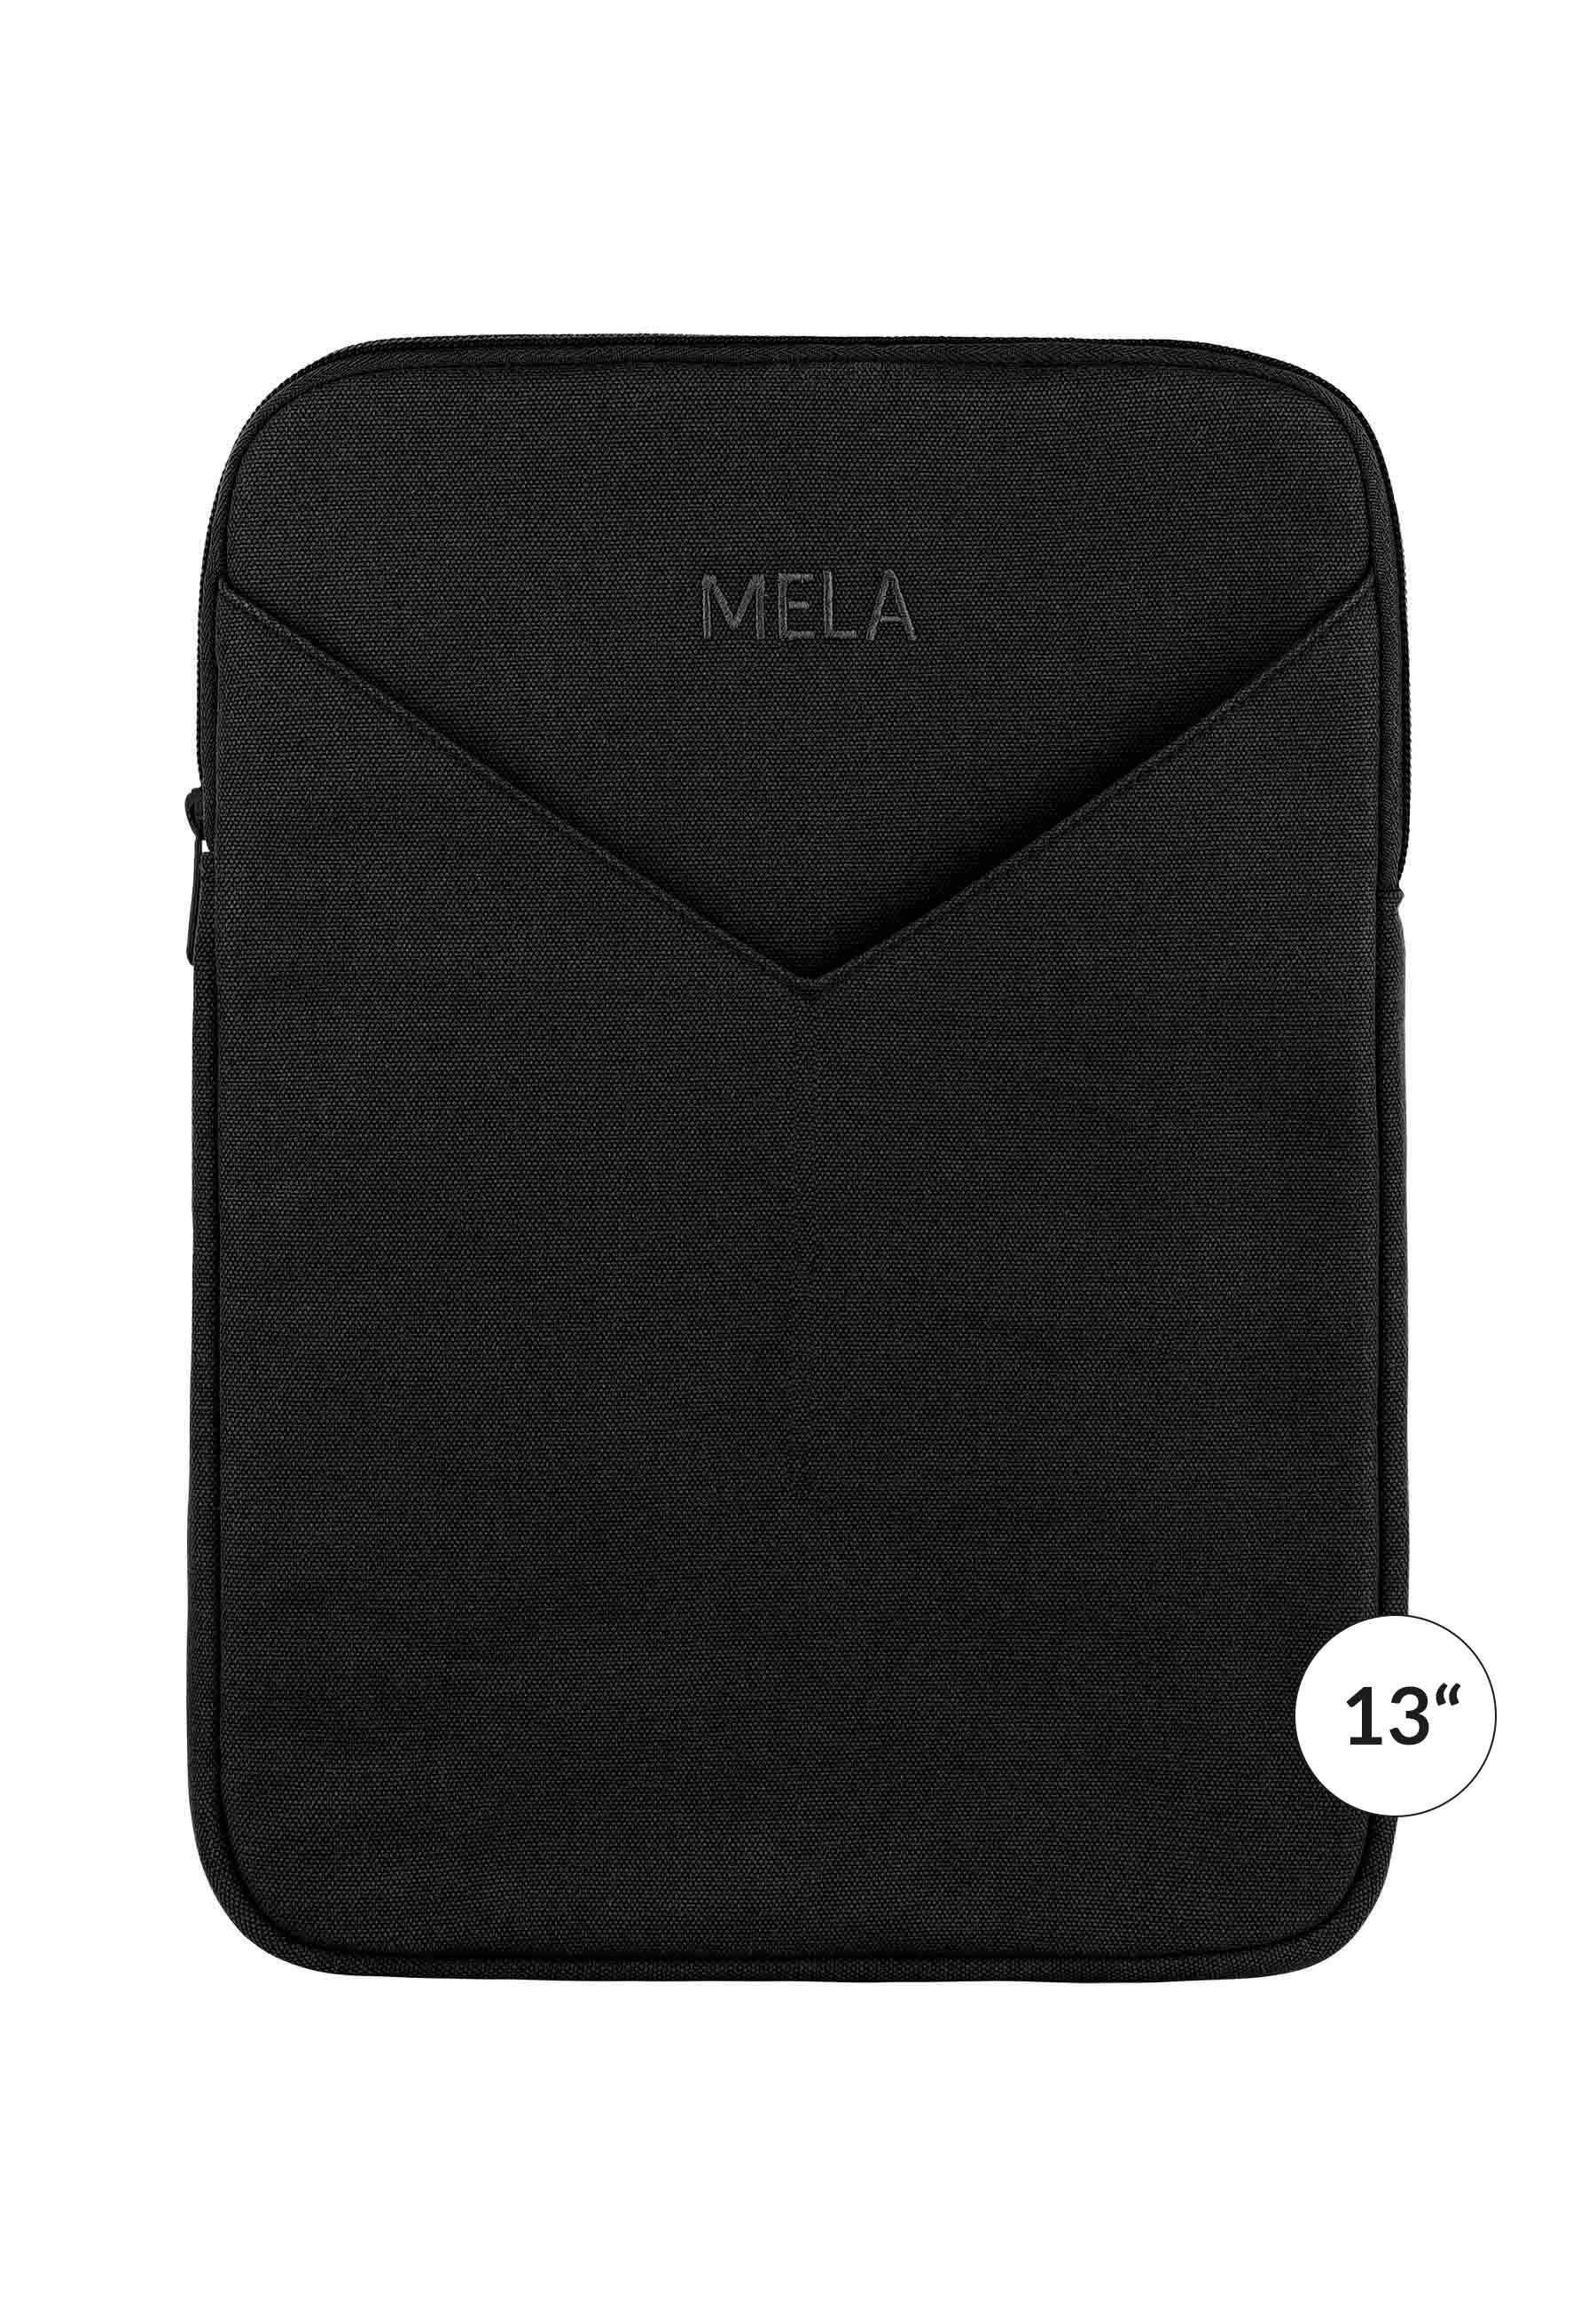 MELA SUMIT, Laptophülle Außentasche Praktische Laptoptasche schwarz